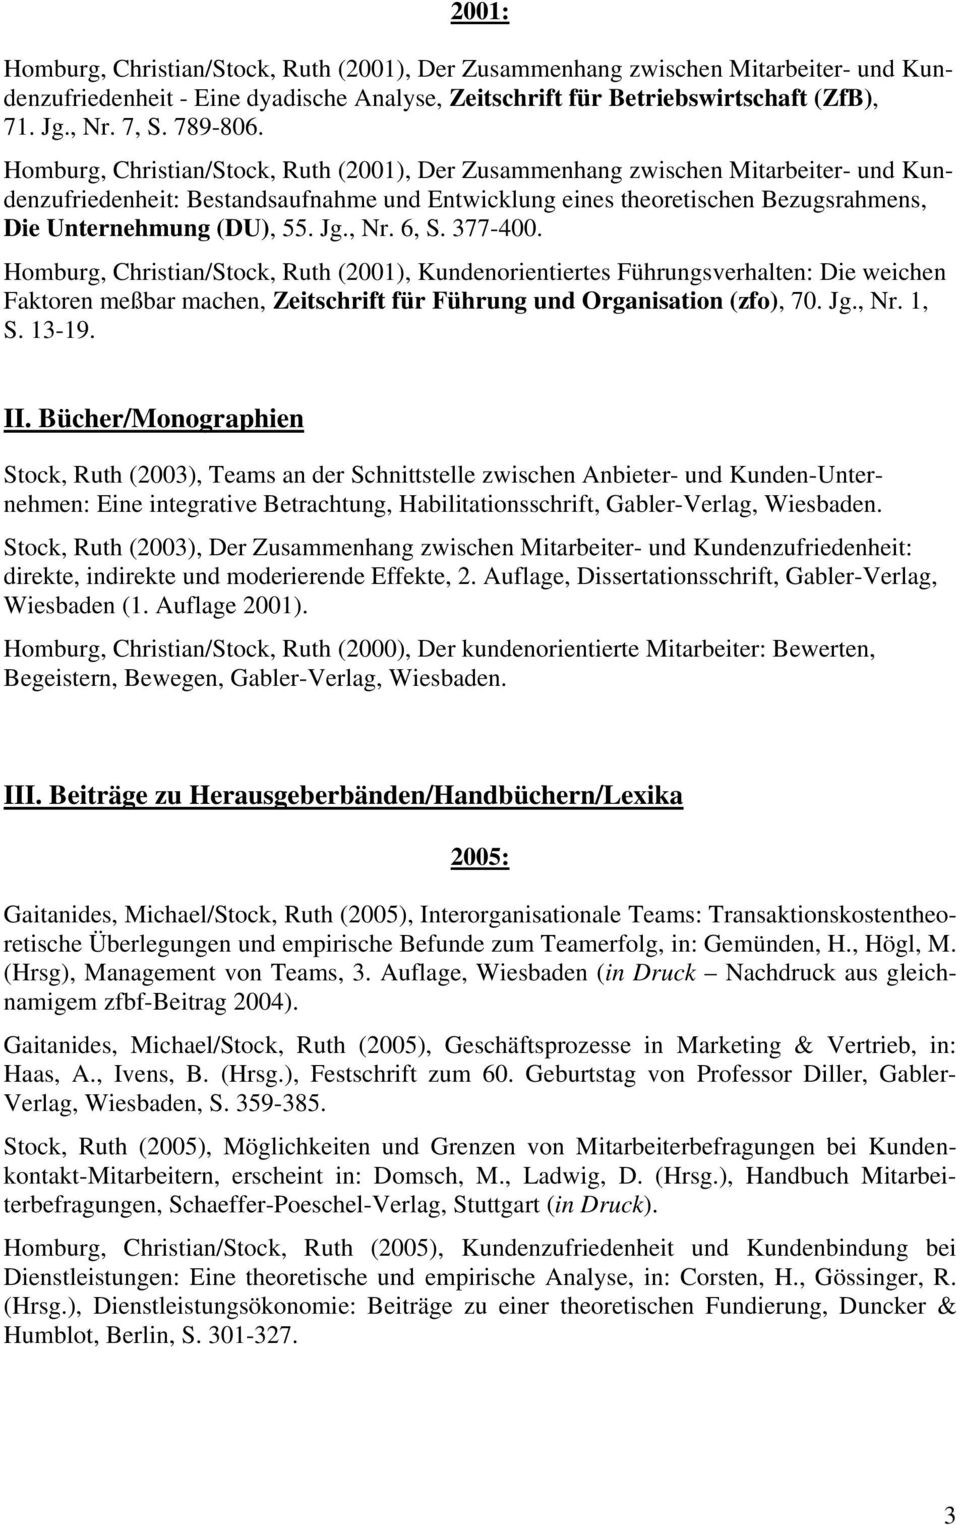 Homburg, Christian/Stock, Ruth (2001), Der Zusammenhang zwischen Mitarbeiter- und Kundenzufriedenheit: Bestandsaufnahme und Entwicklung eines theoretischen Bezugsrahmens, Die Unternehmung (DU), 55.